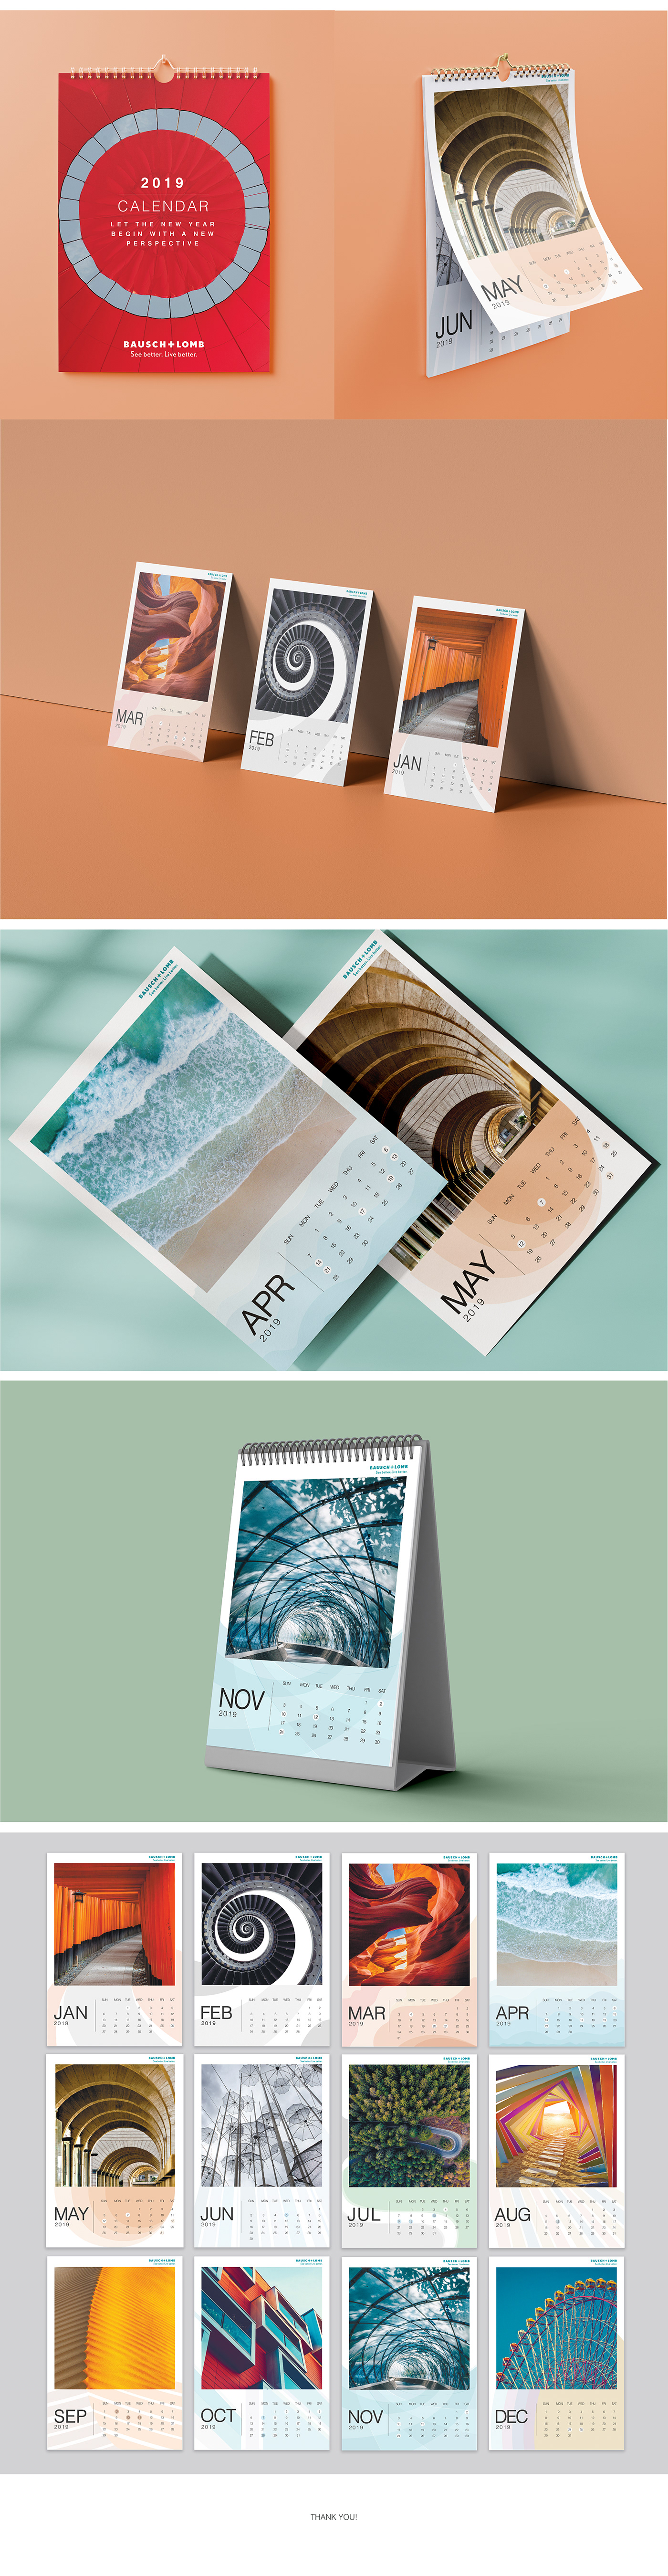 bausch n laumb branding  calendar calendar design graphic design  Logo Design mockups nature photography Photography  Poster Design